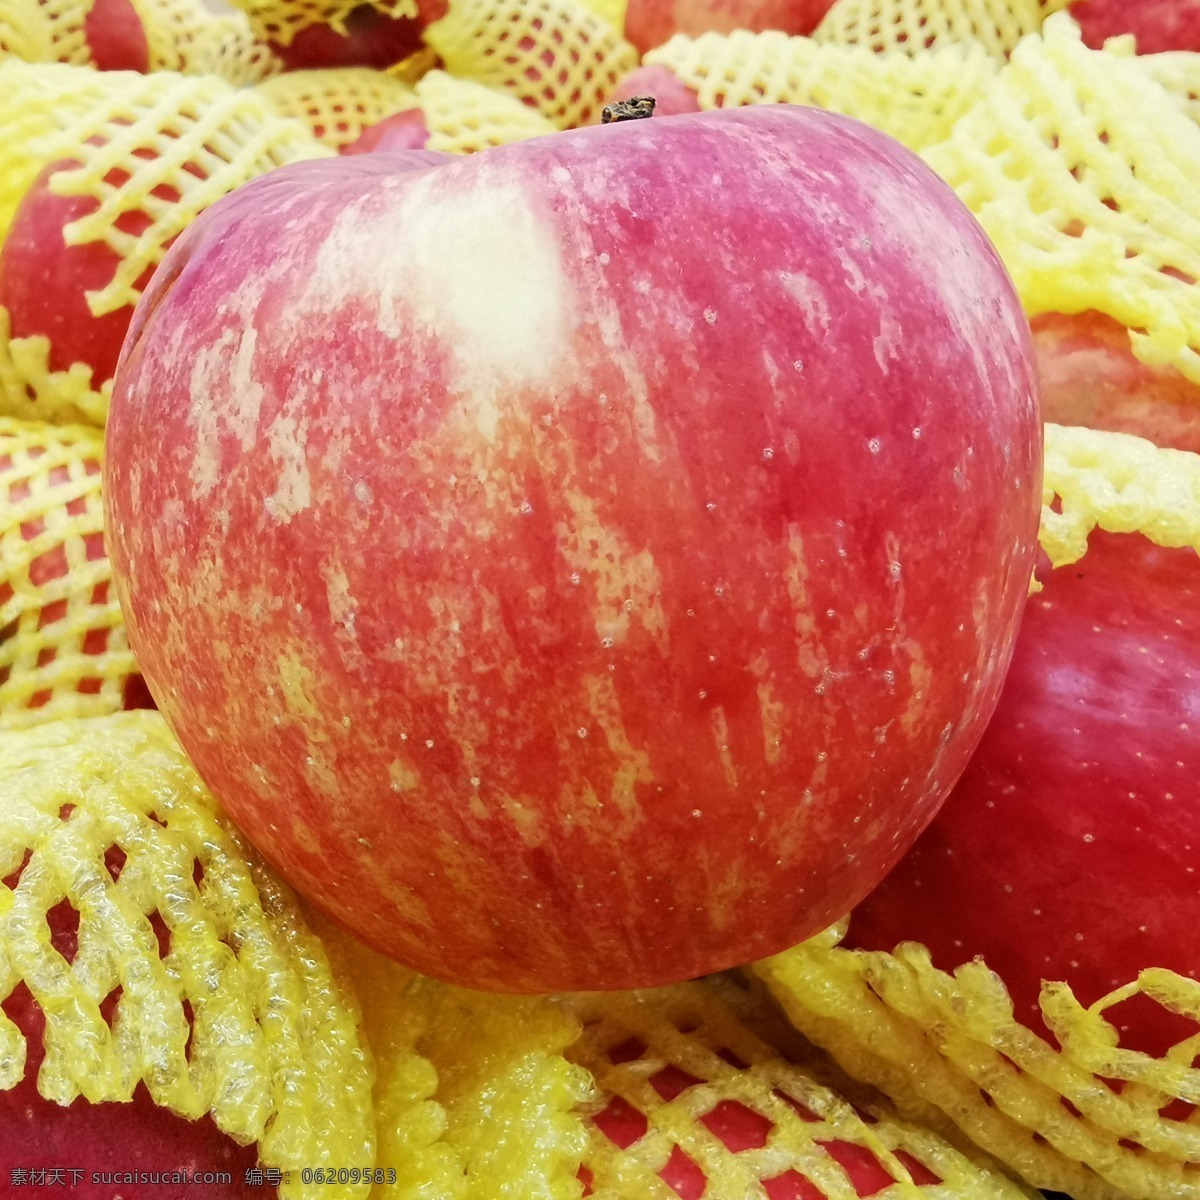 红富士苹果 苹果 红富士 有机水果 绿色水果 新鲜水果 农产品 生物世界 水果